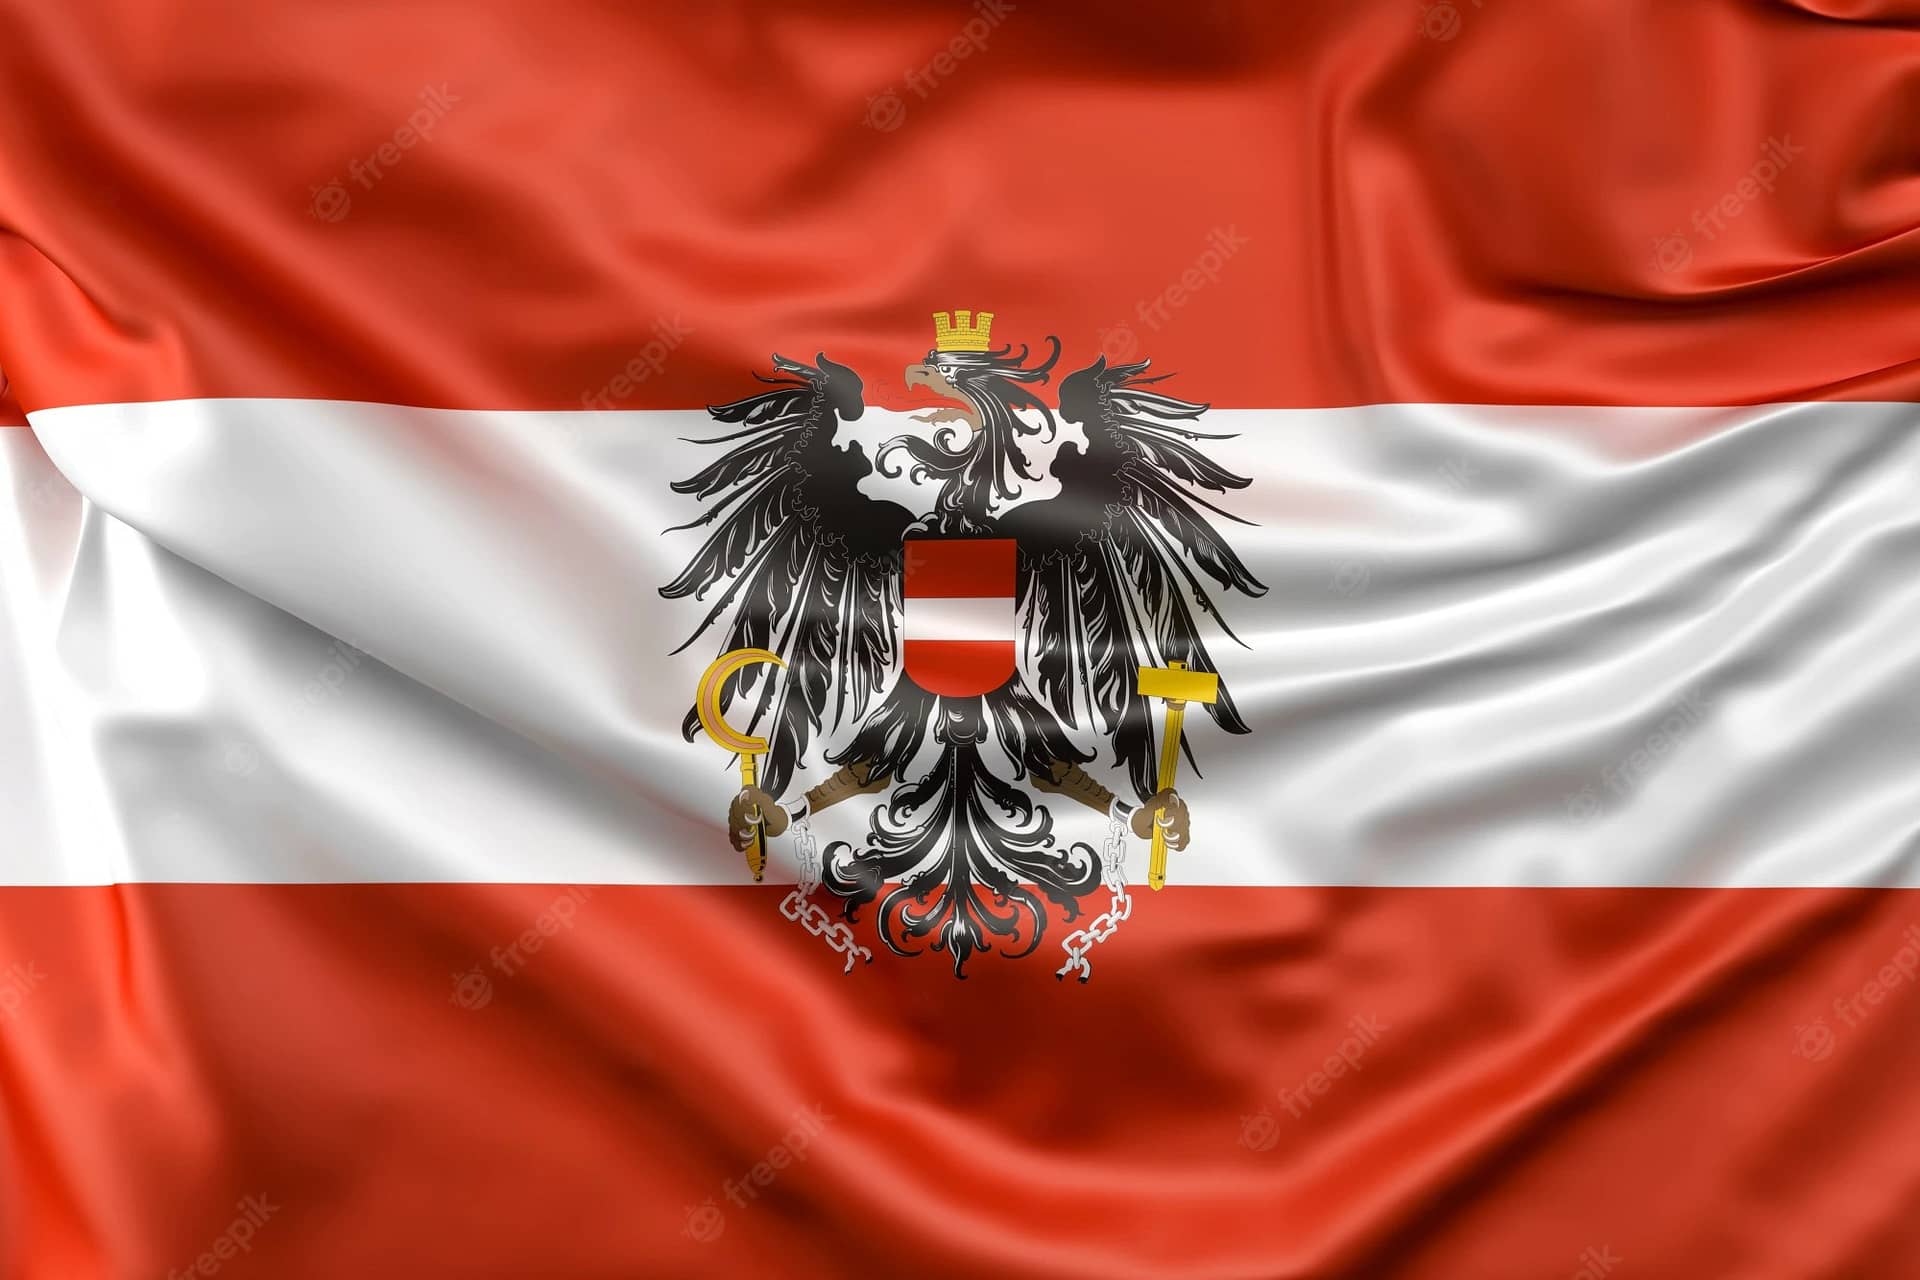 bandeira-da-austria-com-bandeira_1401-61